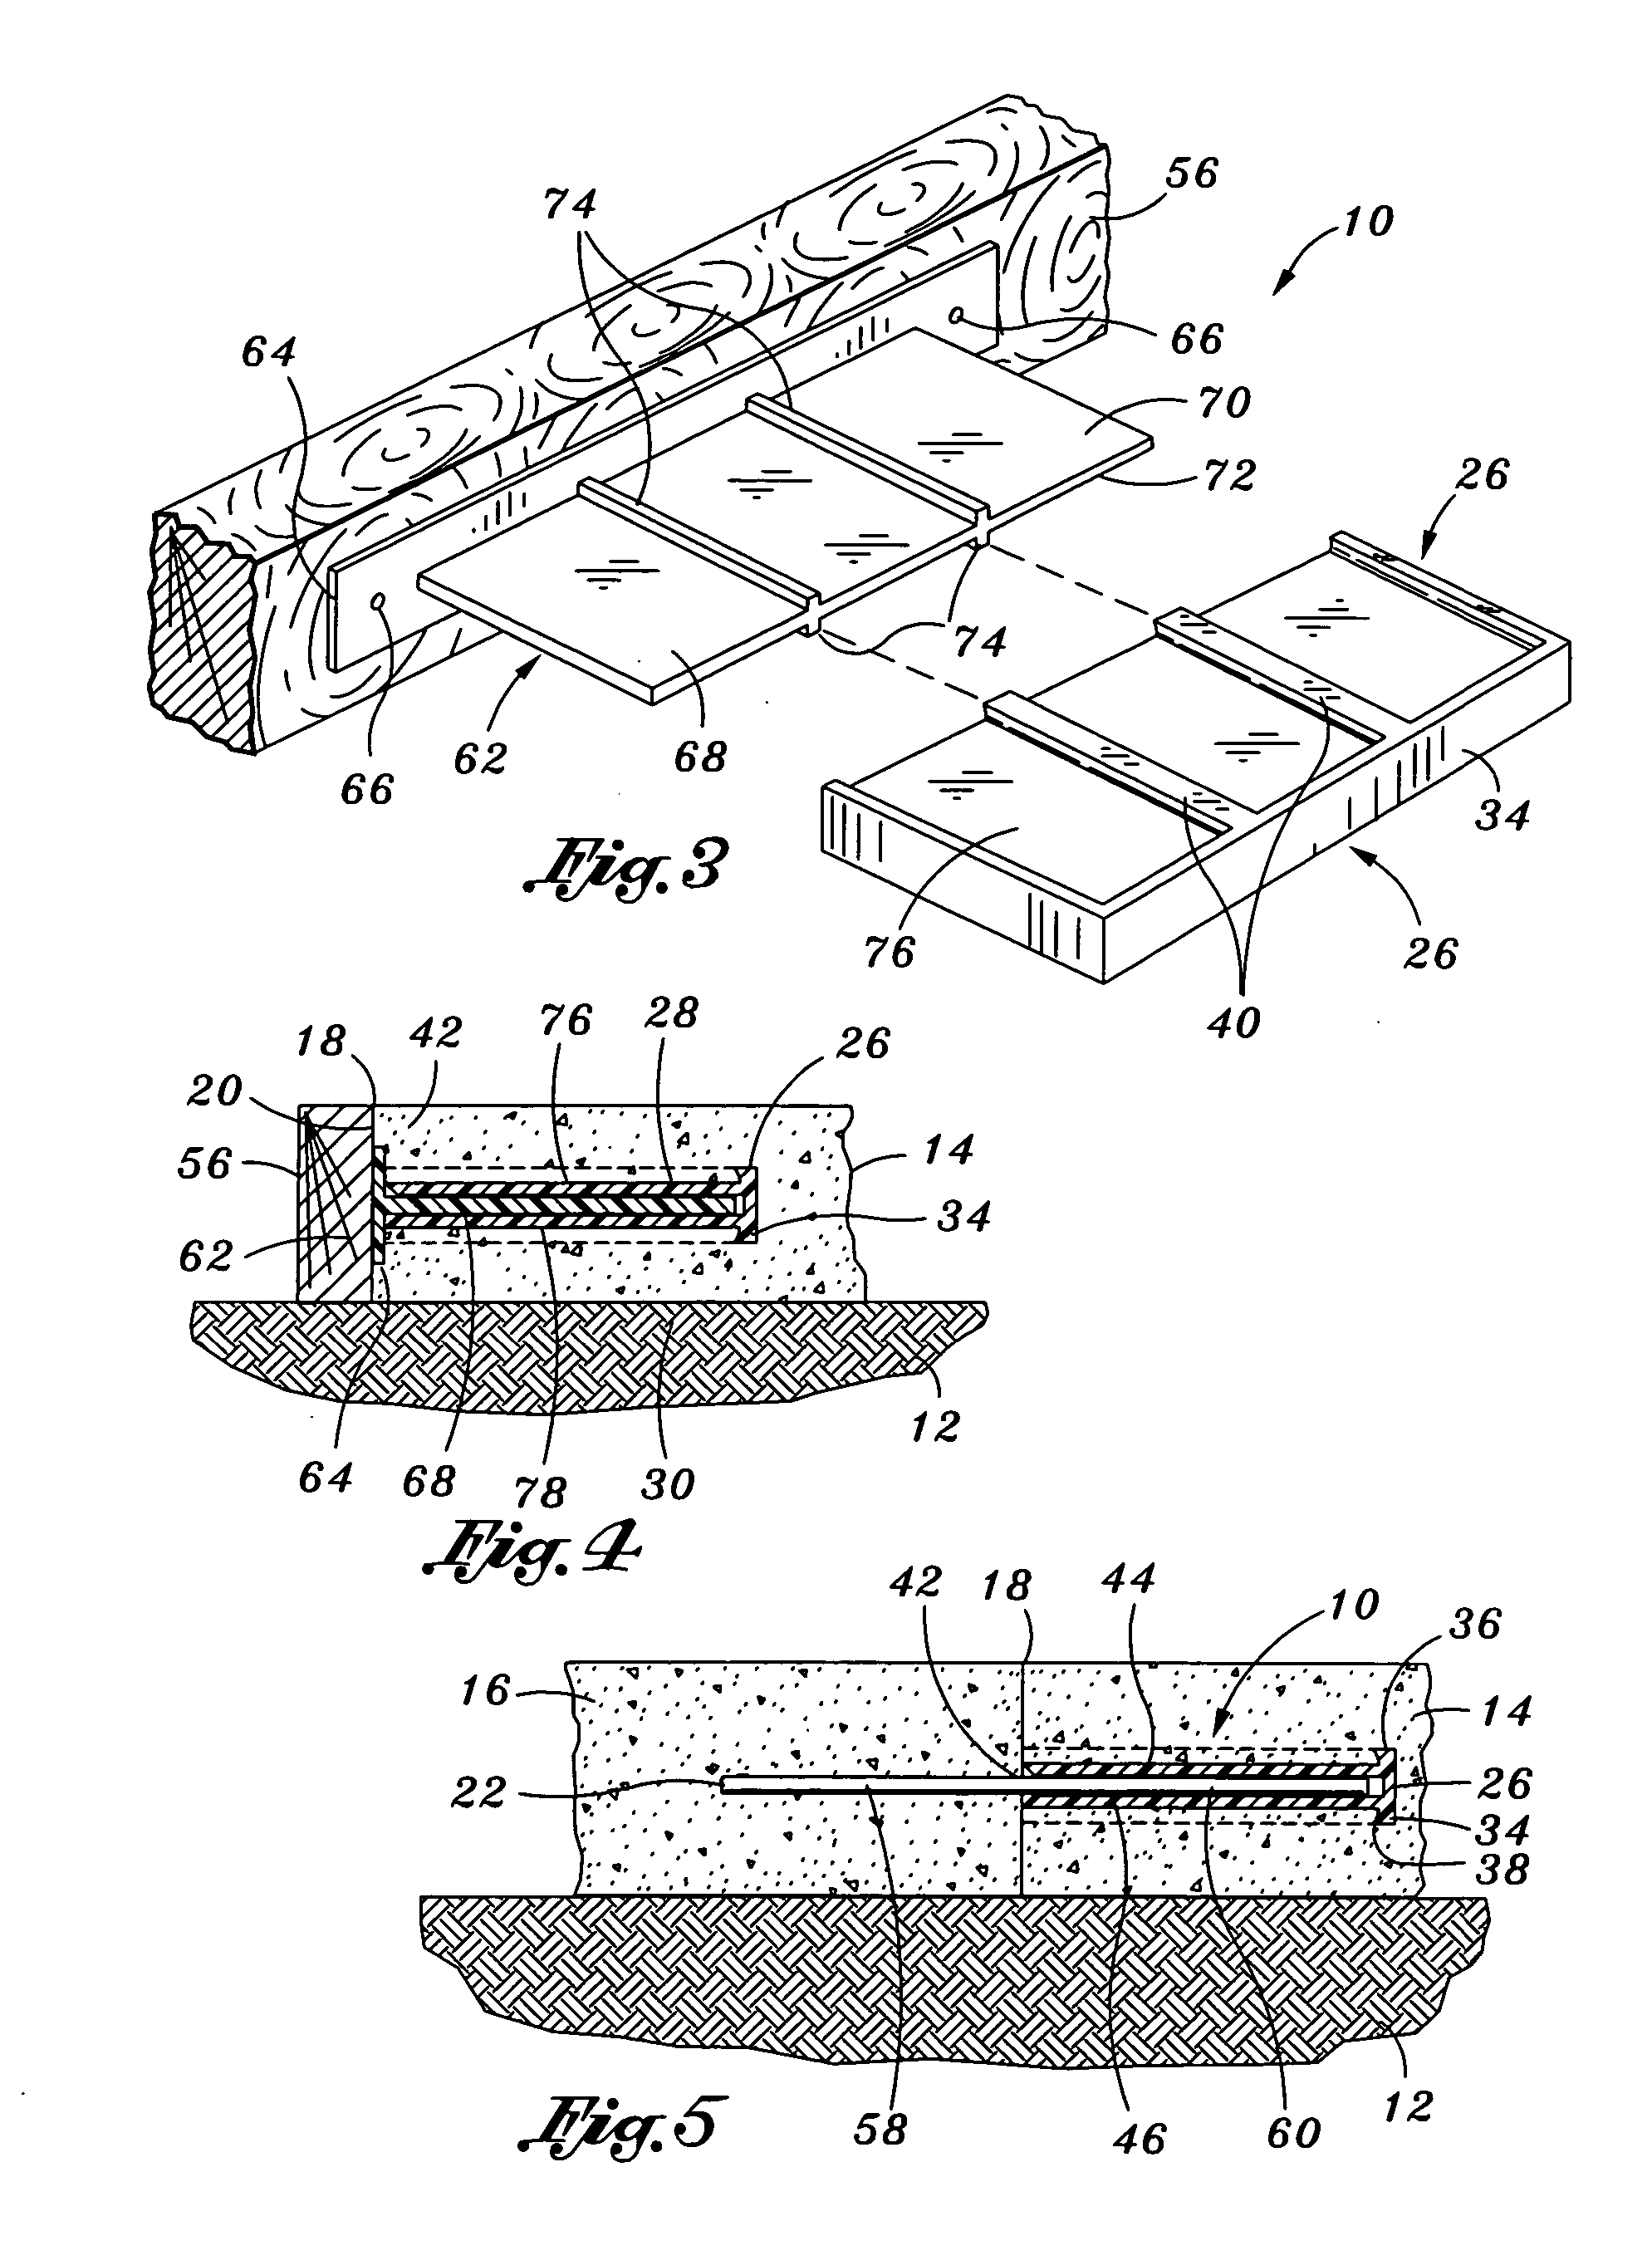 Plate concrete dowel system